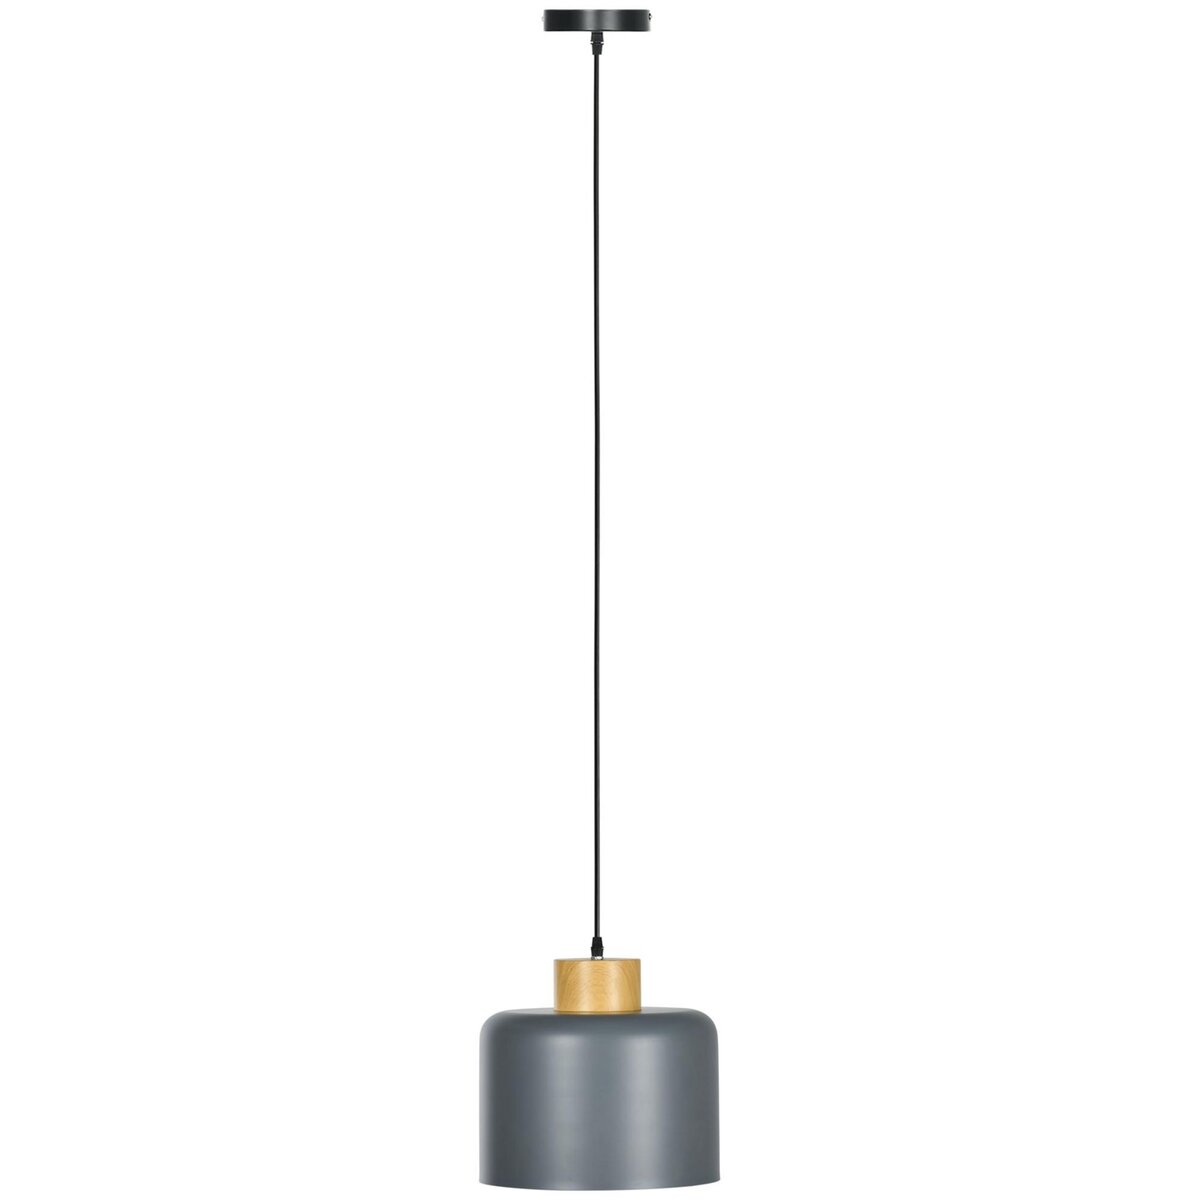 HOMCOM Lustre suspension design scandinave hauteur ajustable Ø 28,5 cm douille E27 gris aspect bois